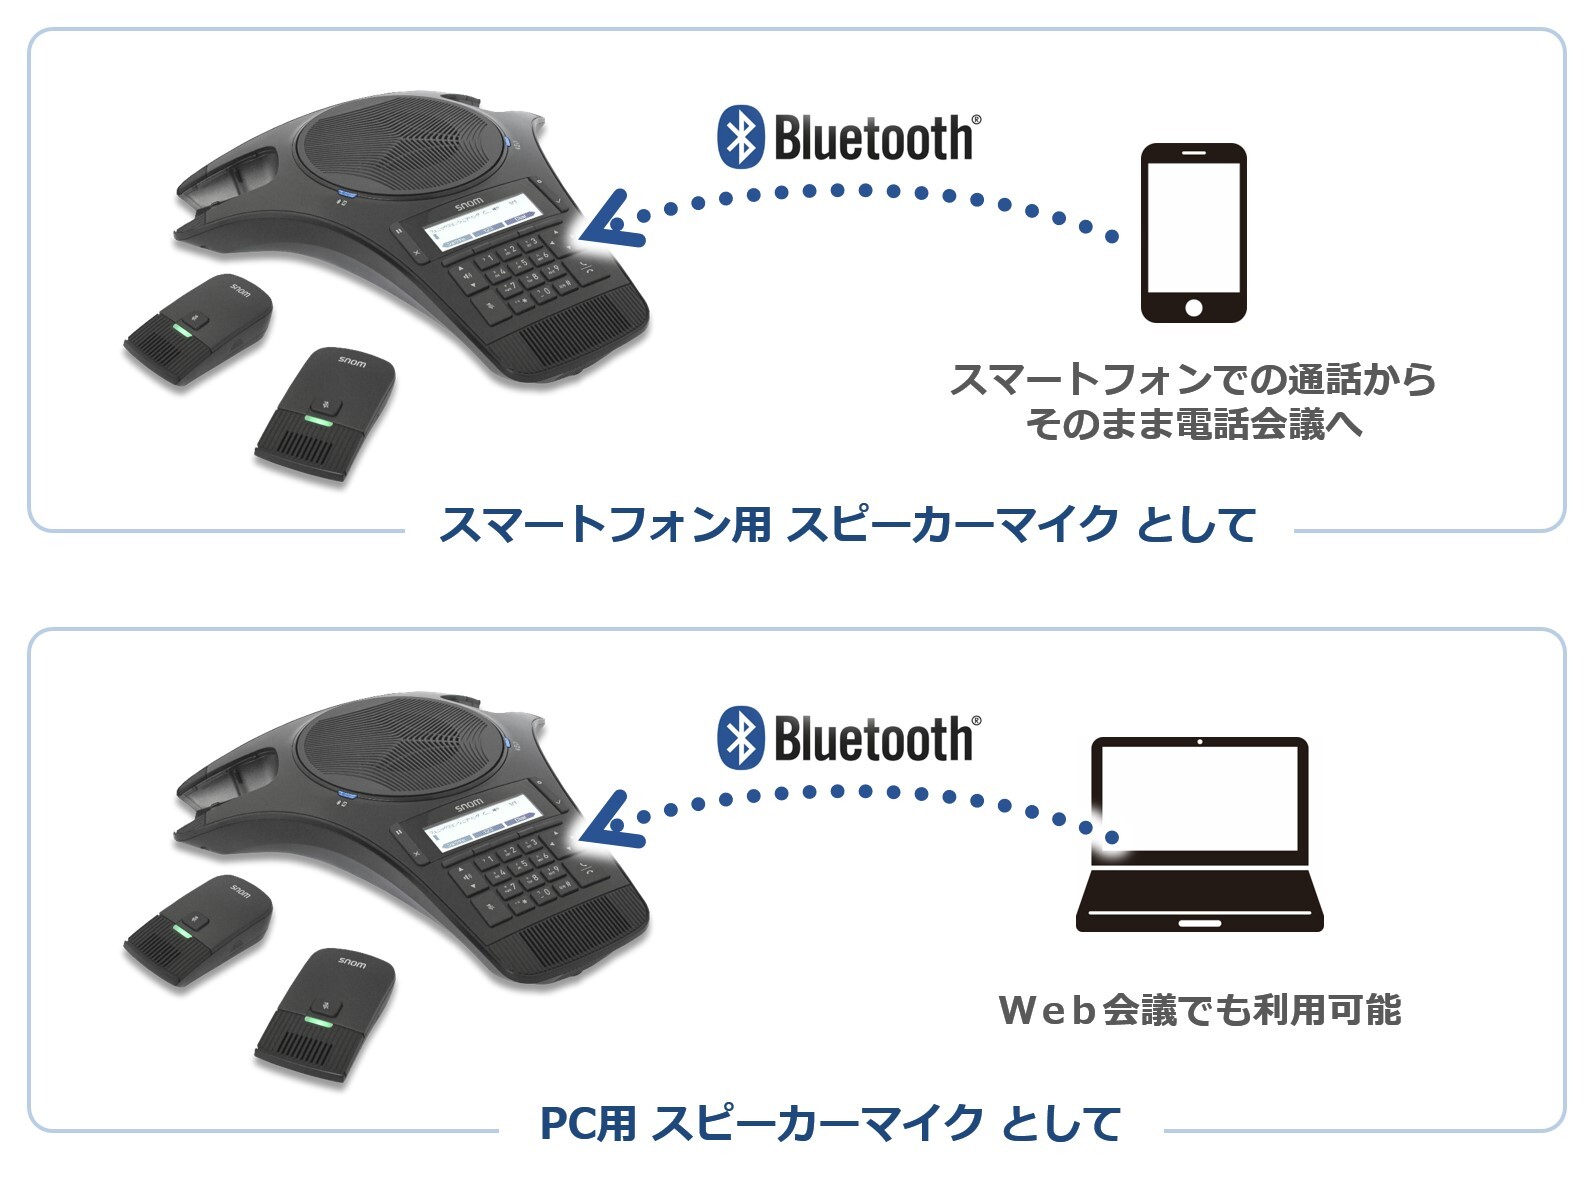 会議室でもソーシャルディスタンス Bluetooth R 接続でスピーカーマイクとして使えるワイヤレスマイク 付き会議用ip電話機snom C5 Wimi を7月8日 水 に発売 株式会社フェニックスエンジニアリングのプレスリリース